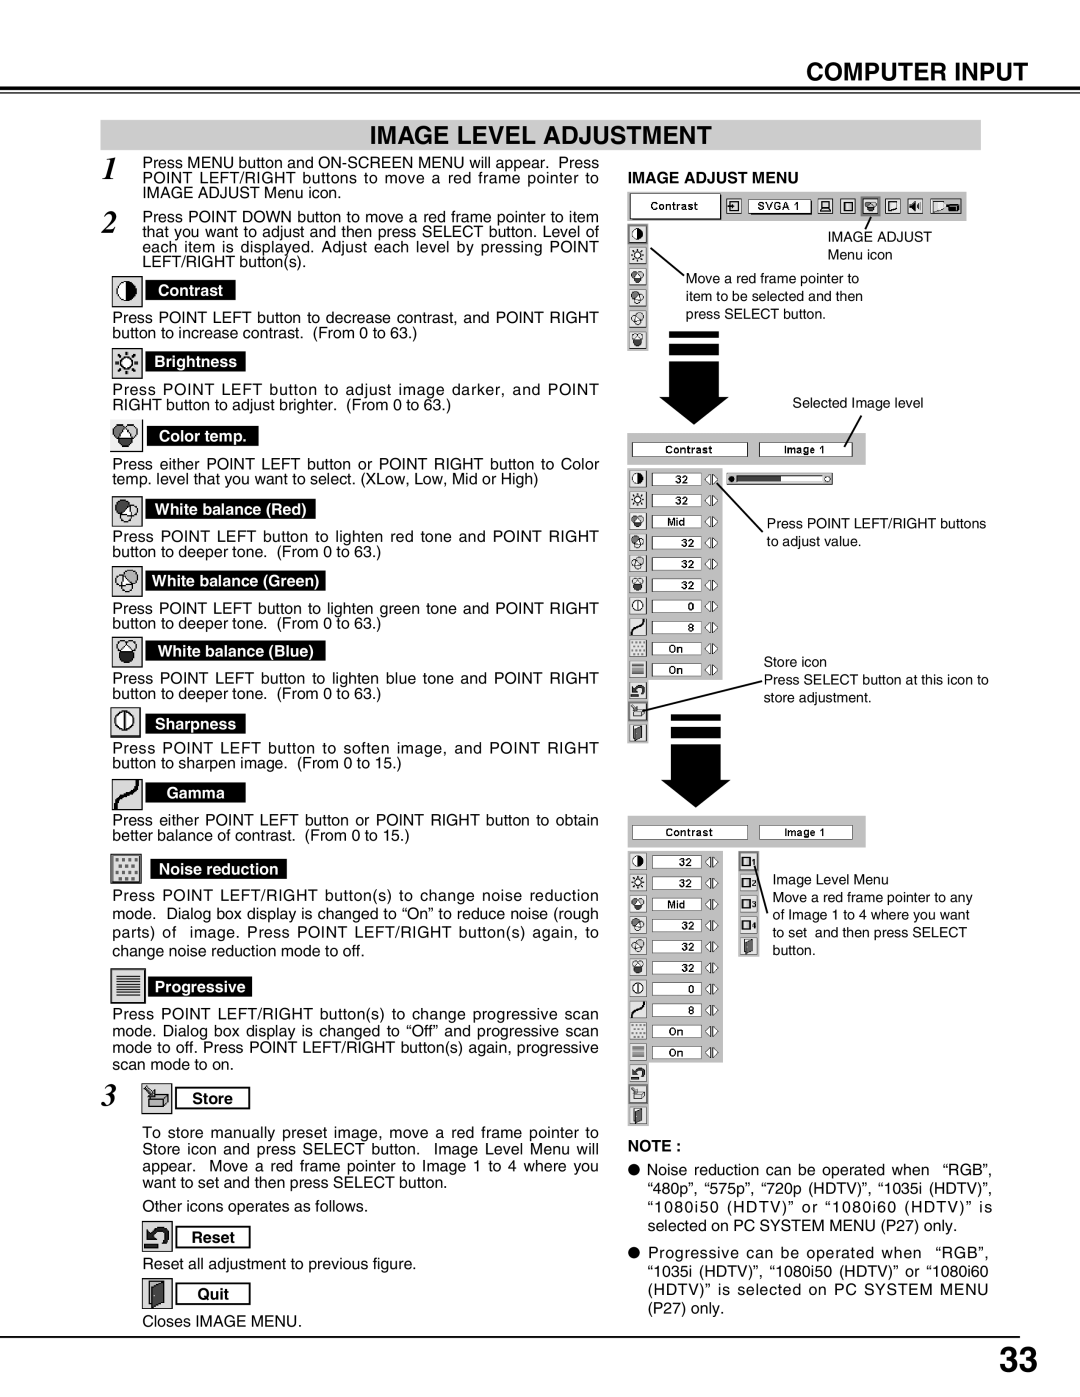 Eiki LC-UXT3 instruction manual Computer Input Image Level Adjustment 